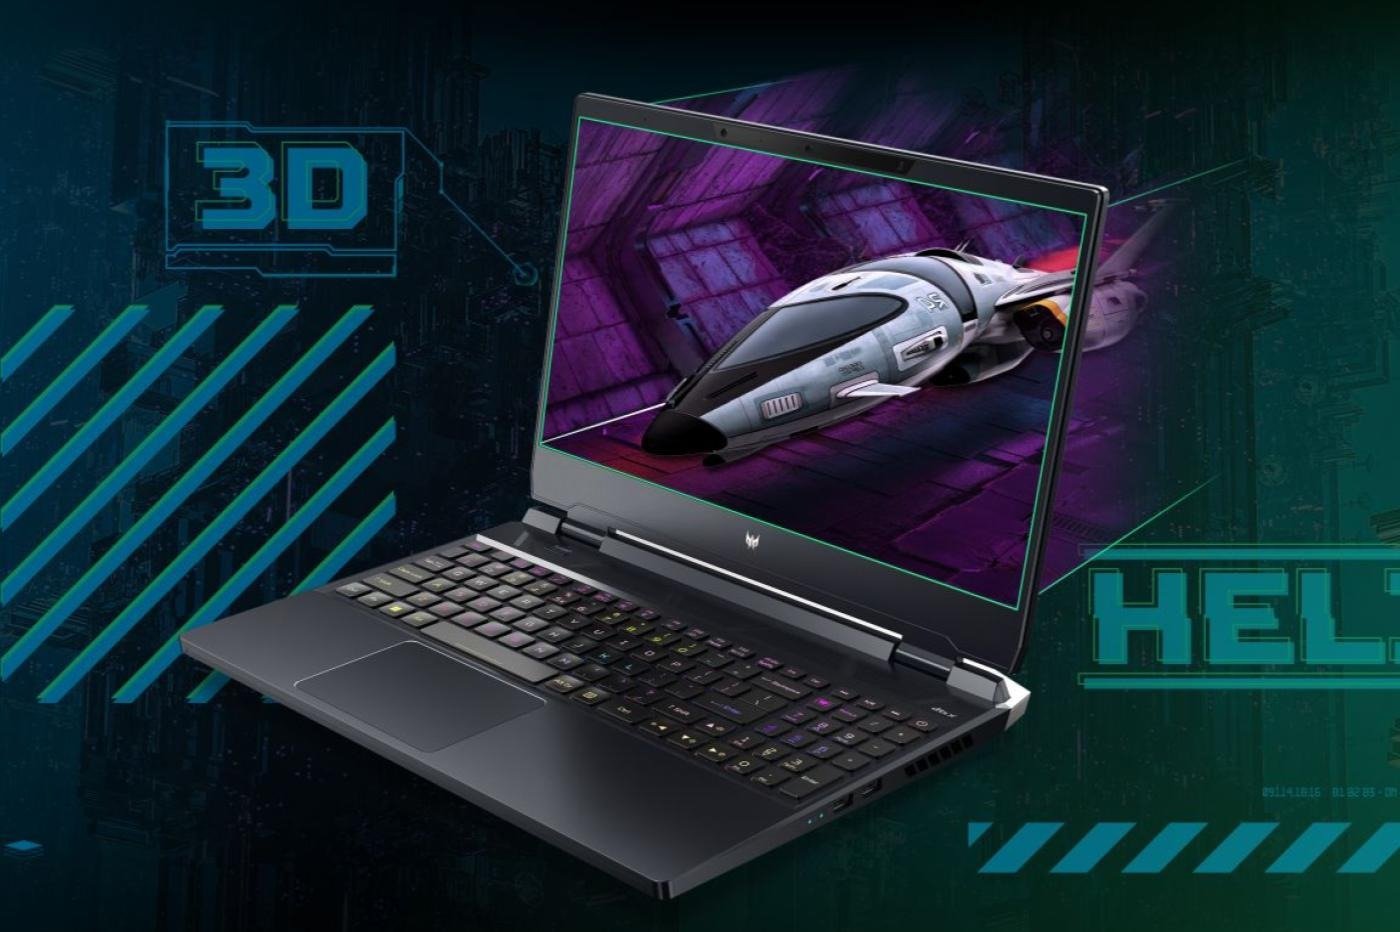 ACER dévoile un impressionnant laptop avec un écran 3D stéréoscopique